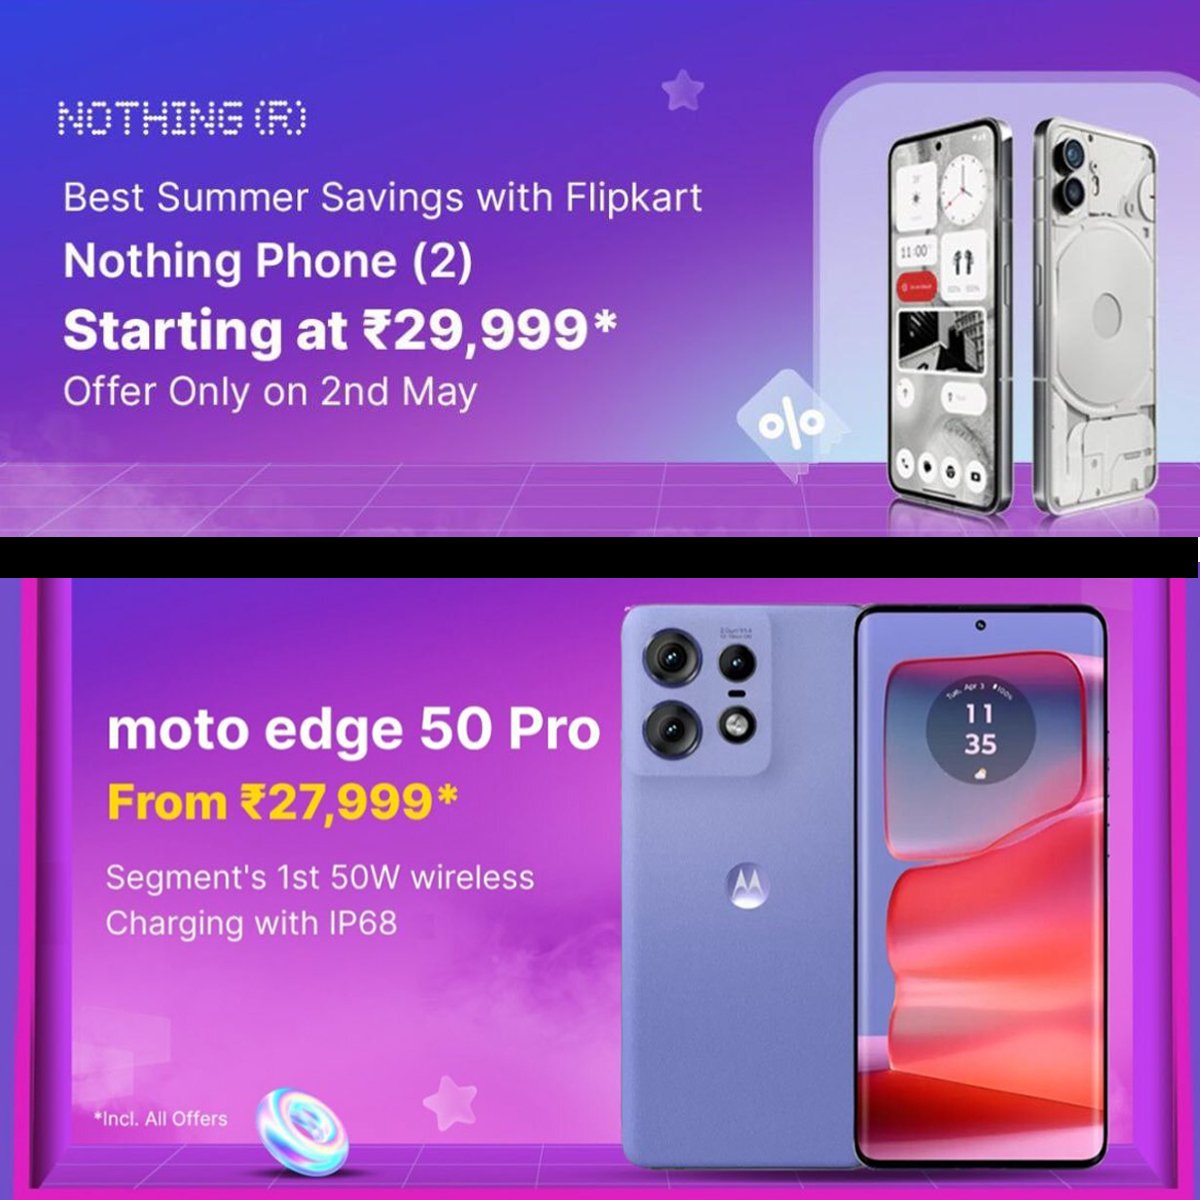 Under ₹30,000 Nothing phone 2 or Moto Edge 50 Pro? This battle is heating up! 

#Nothing #NothingPhone2 #Motorola #MotorolaEdge50Pro